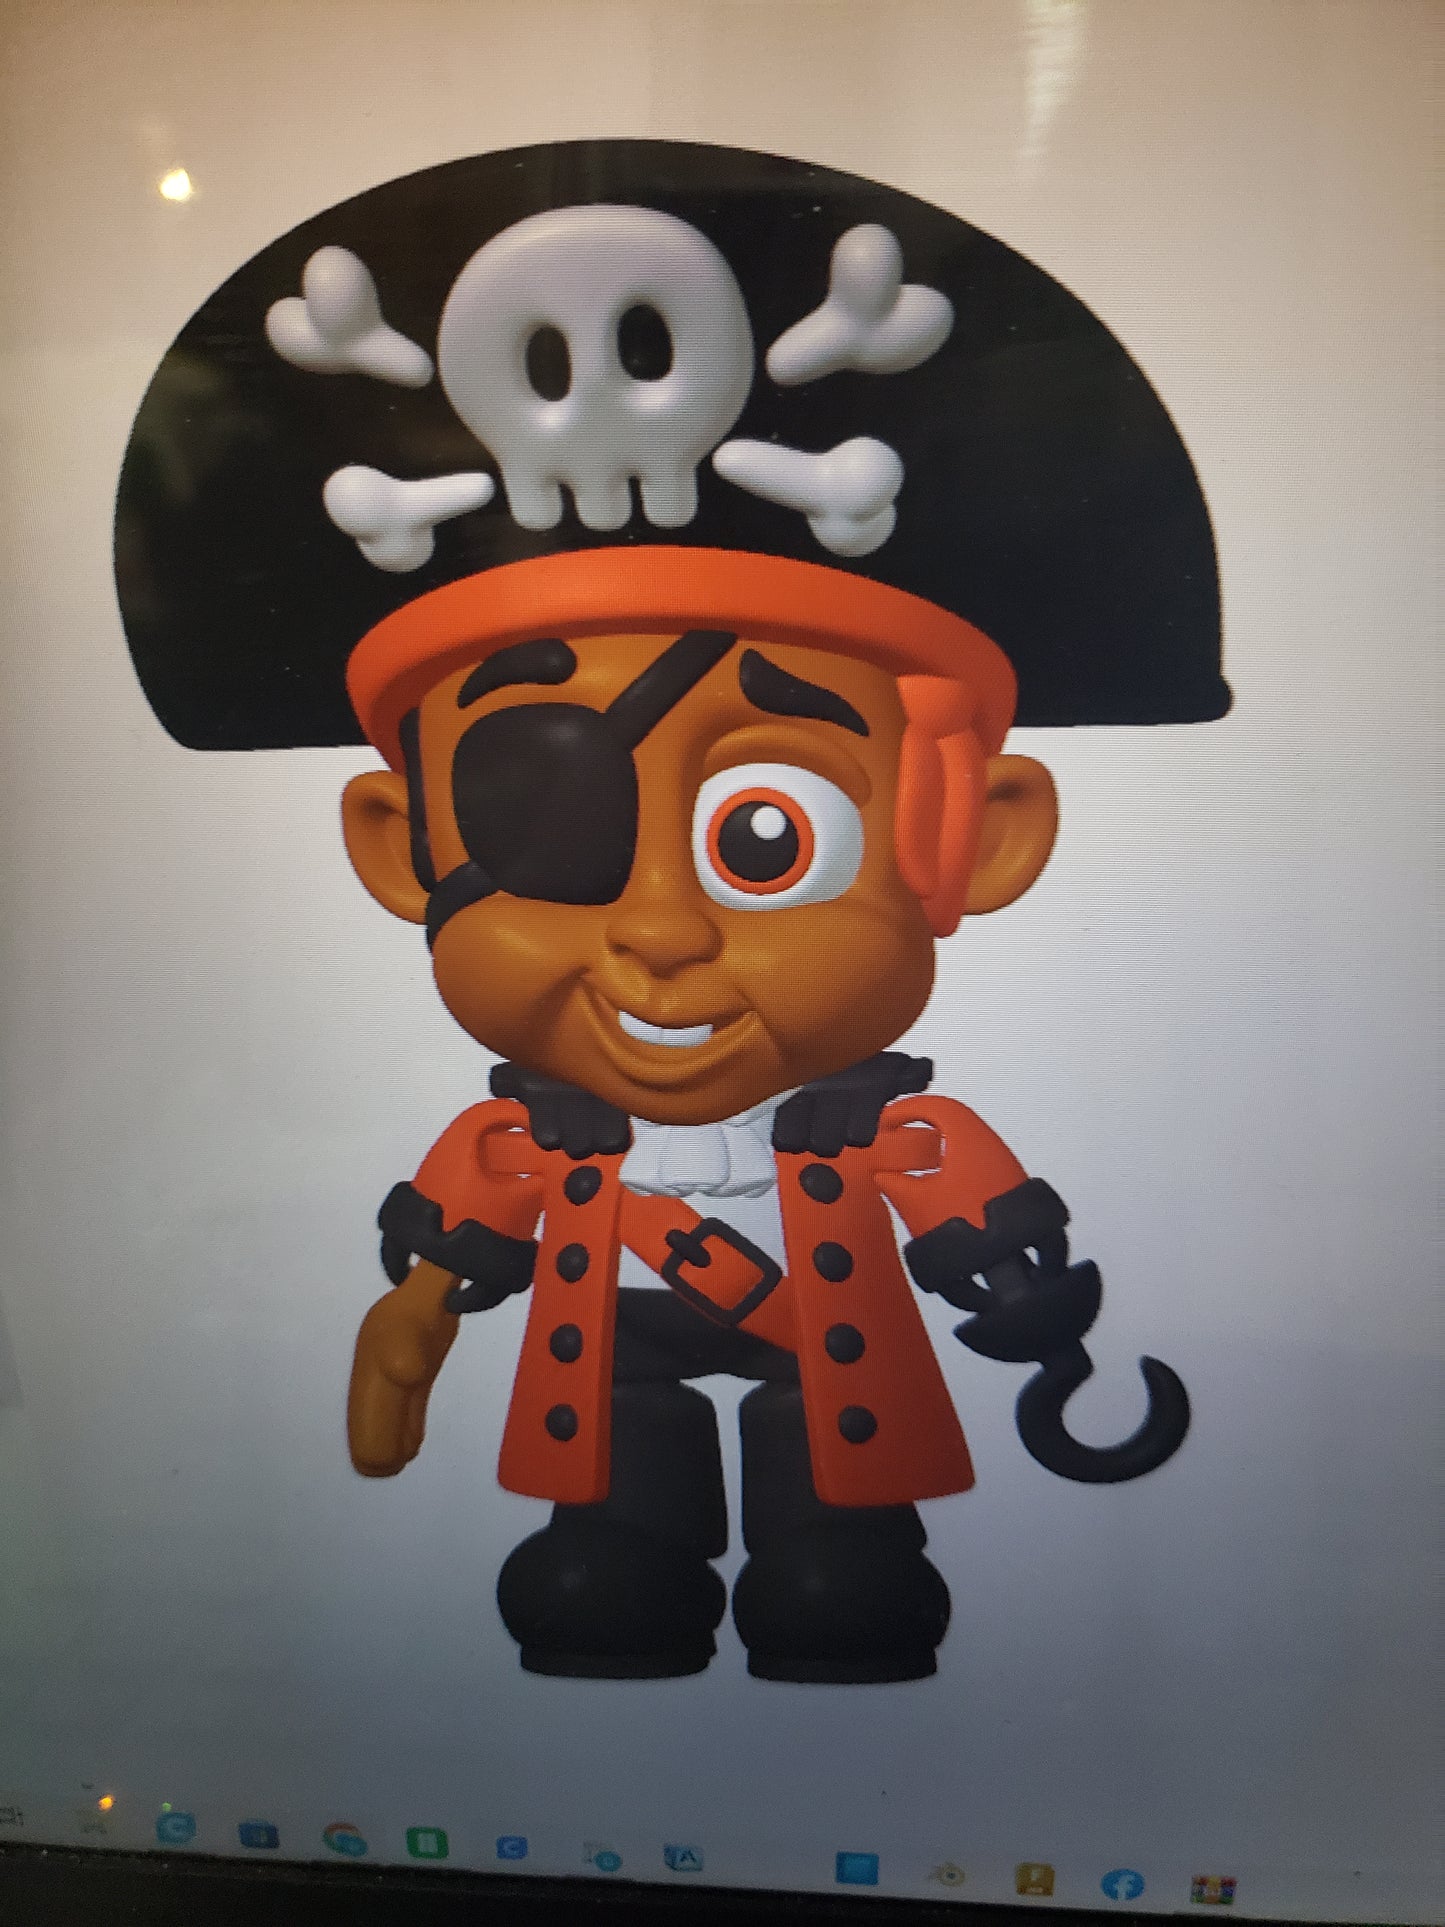 Pirate and stolen Treasure